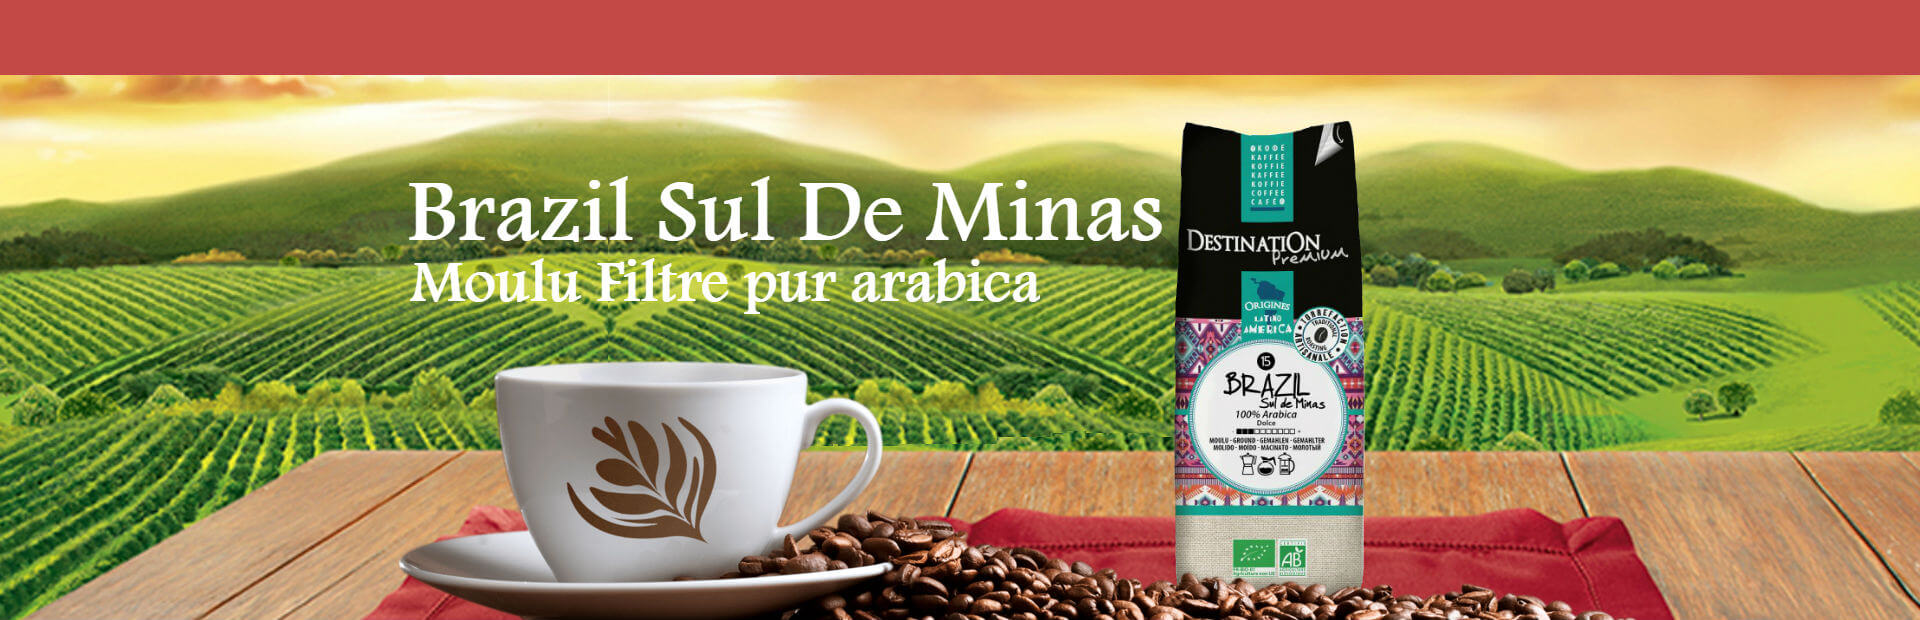 cafe-brazil-sul-de-minas-destination-005